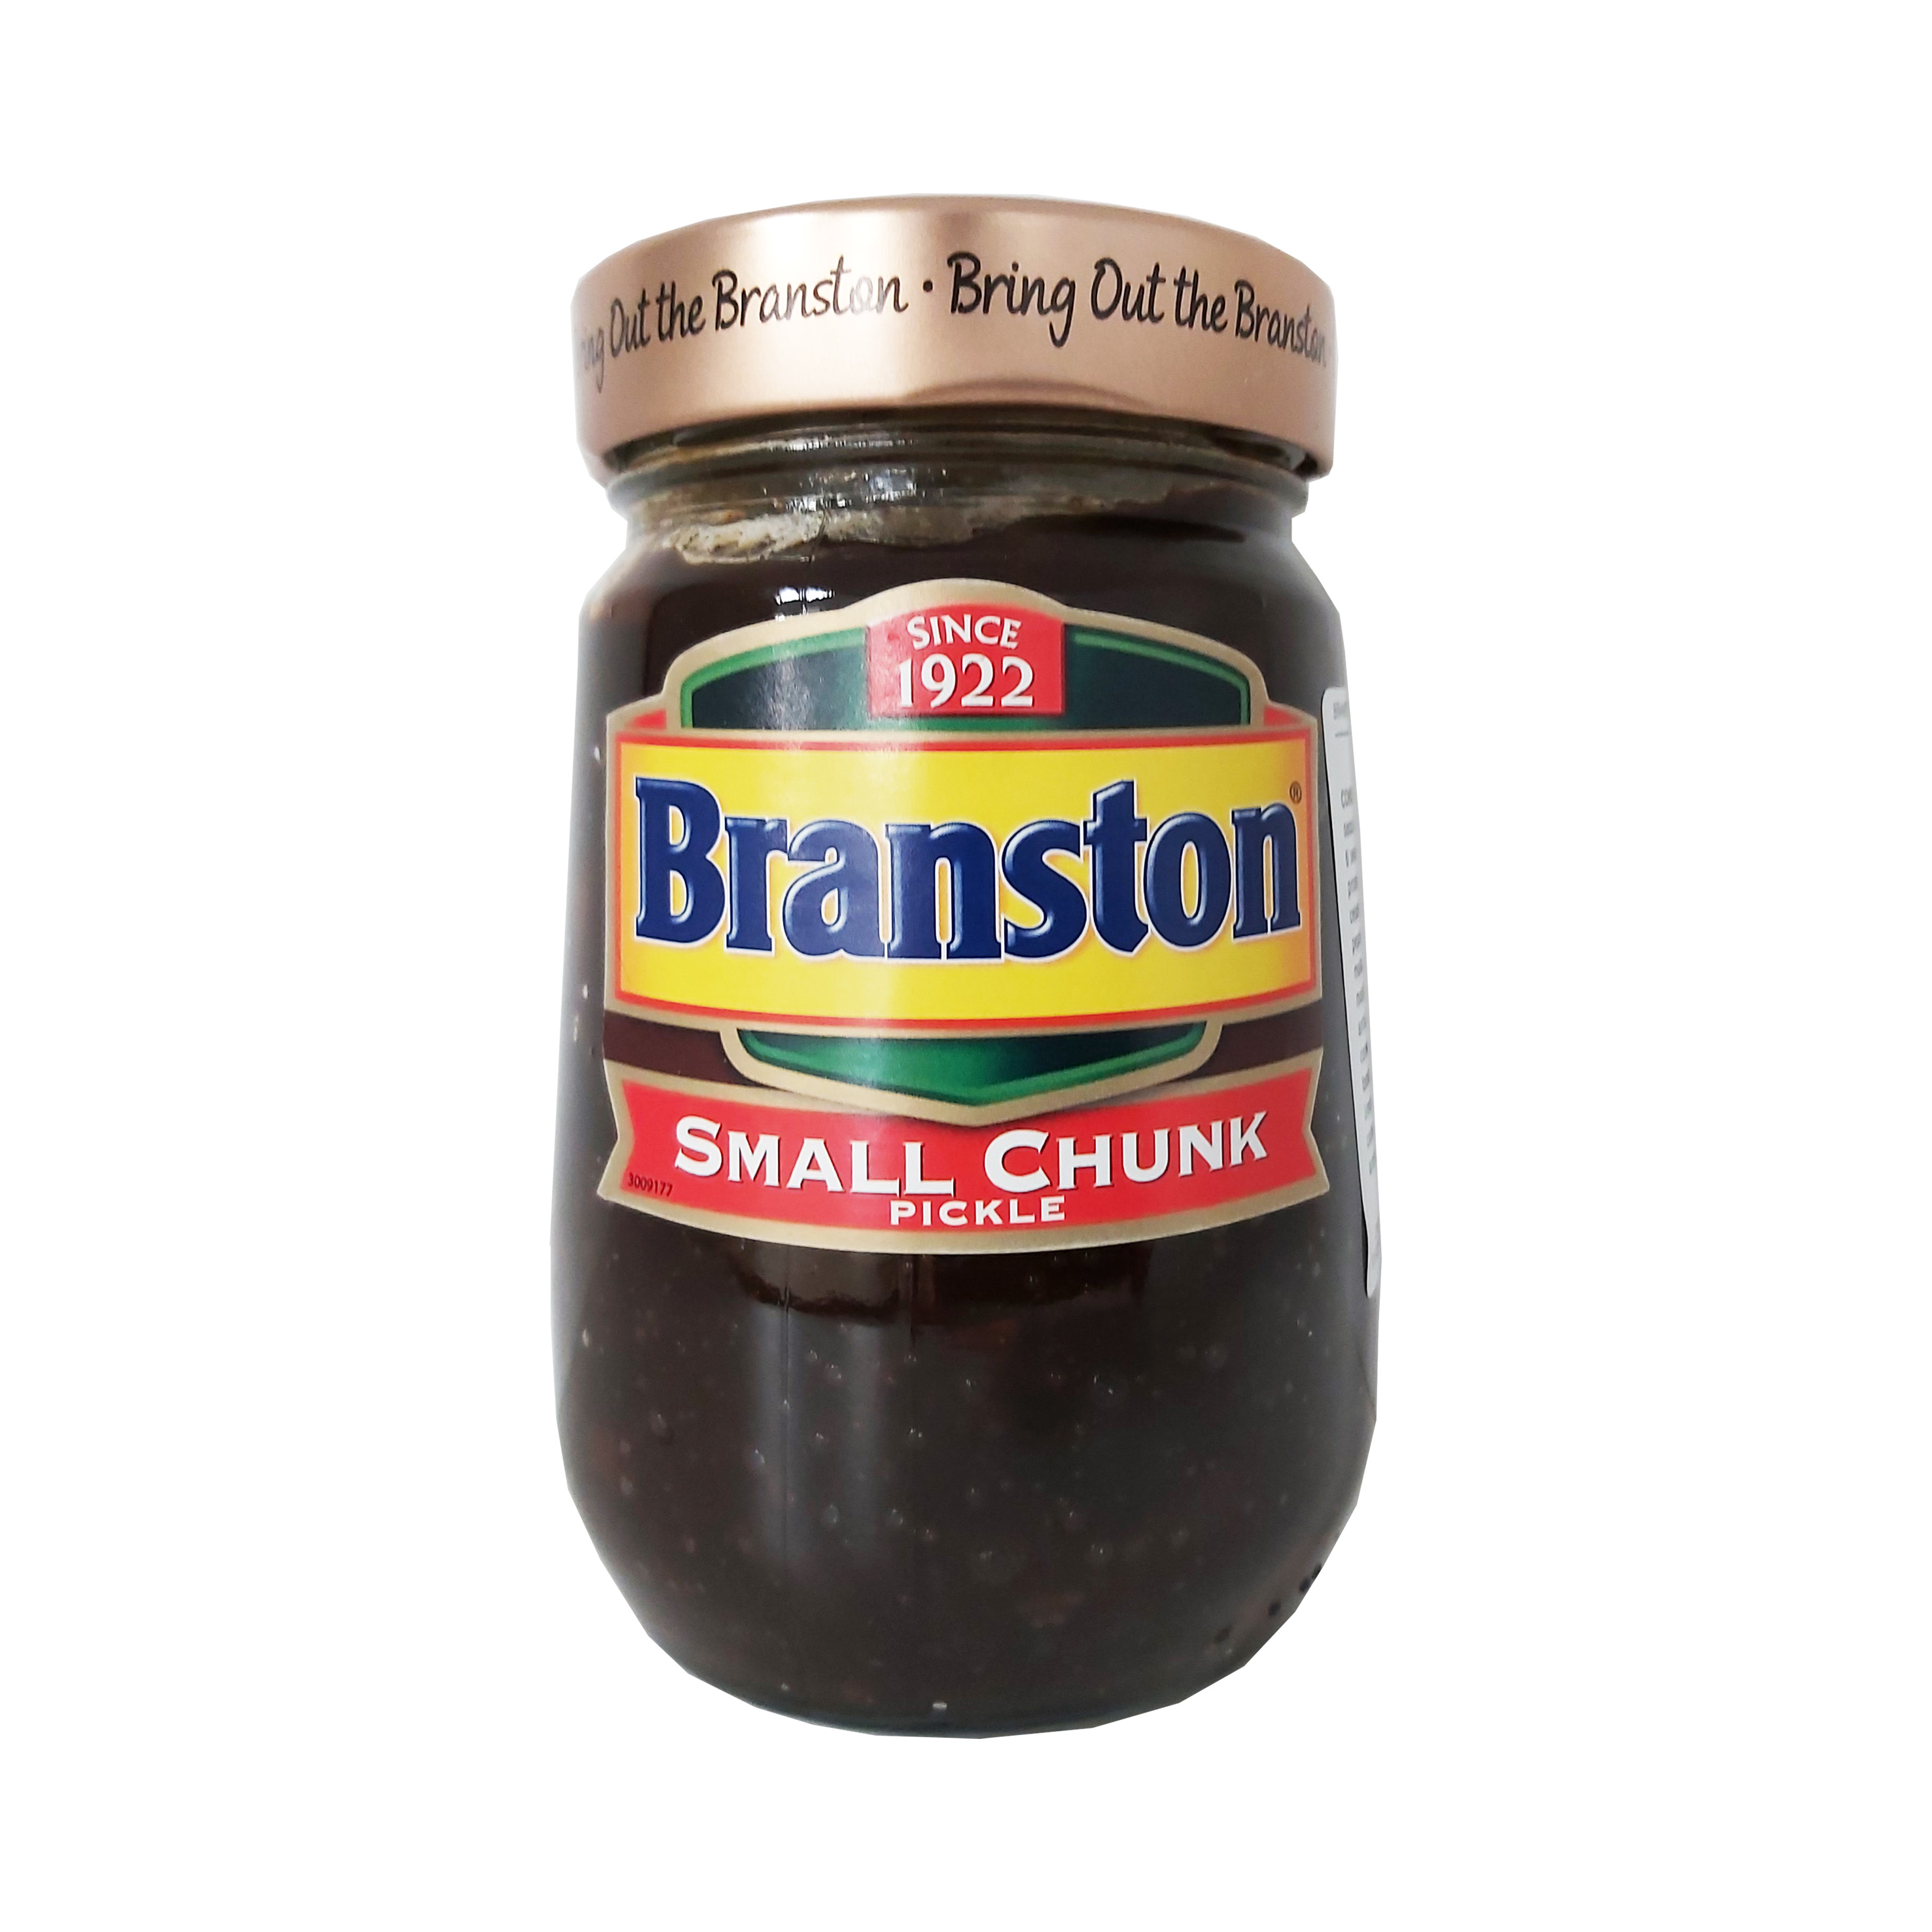 Branston salsa encurtidos sandwich trozos peq.